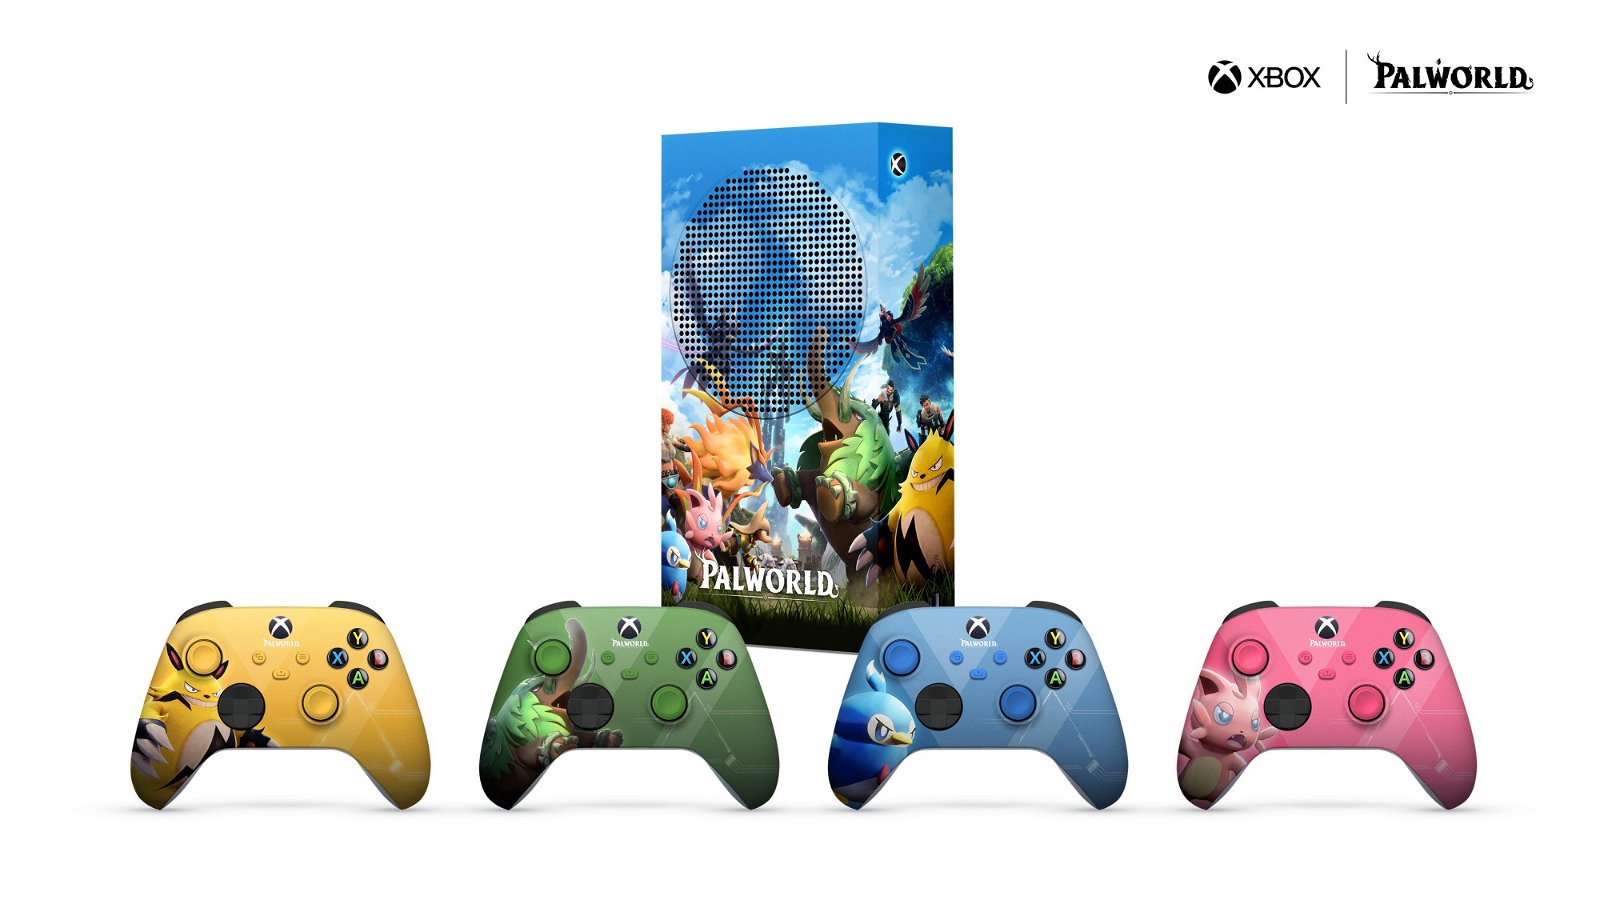 Sì, Xbox a tema Palworld è ufficiale e potete averla gratis